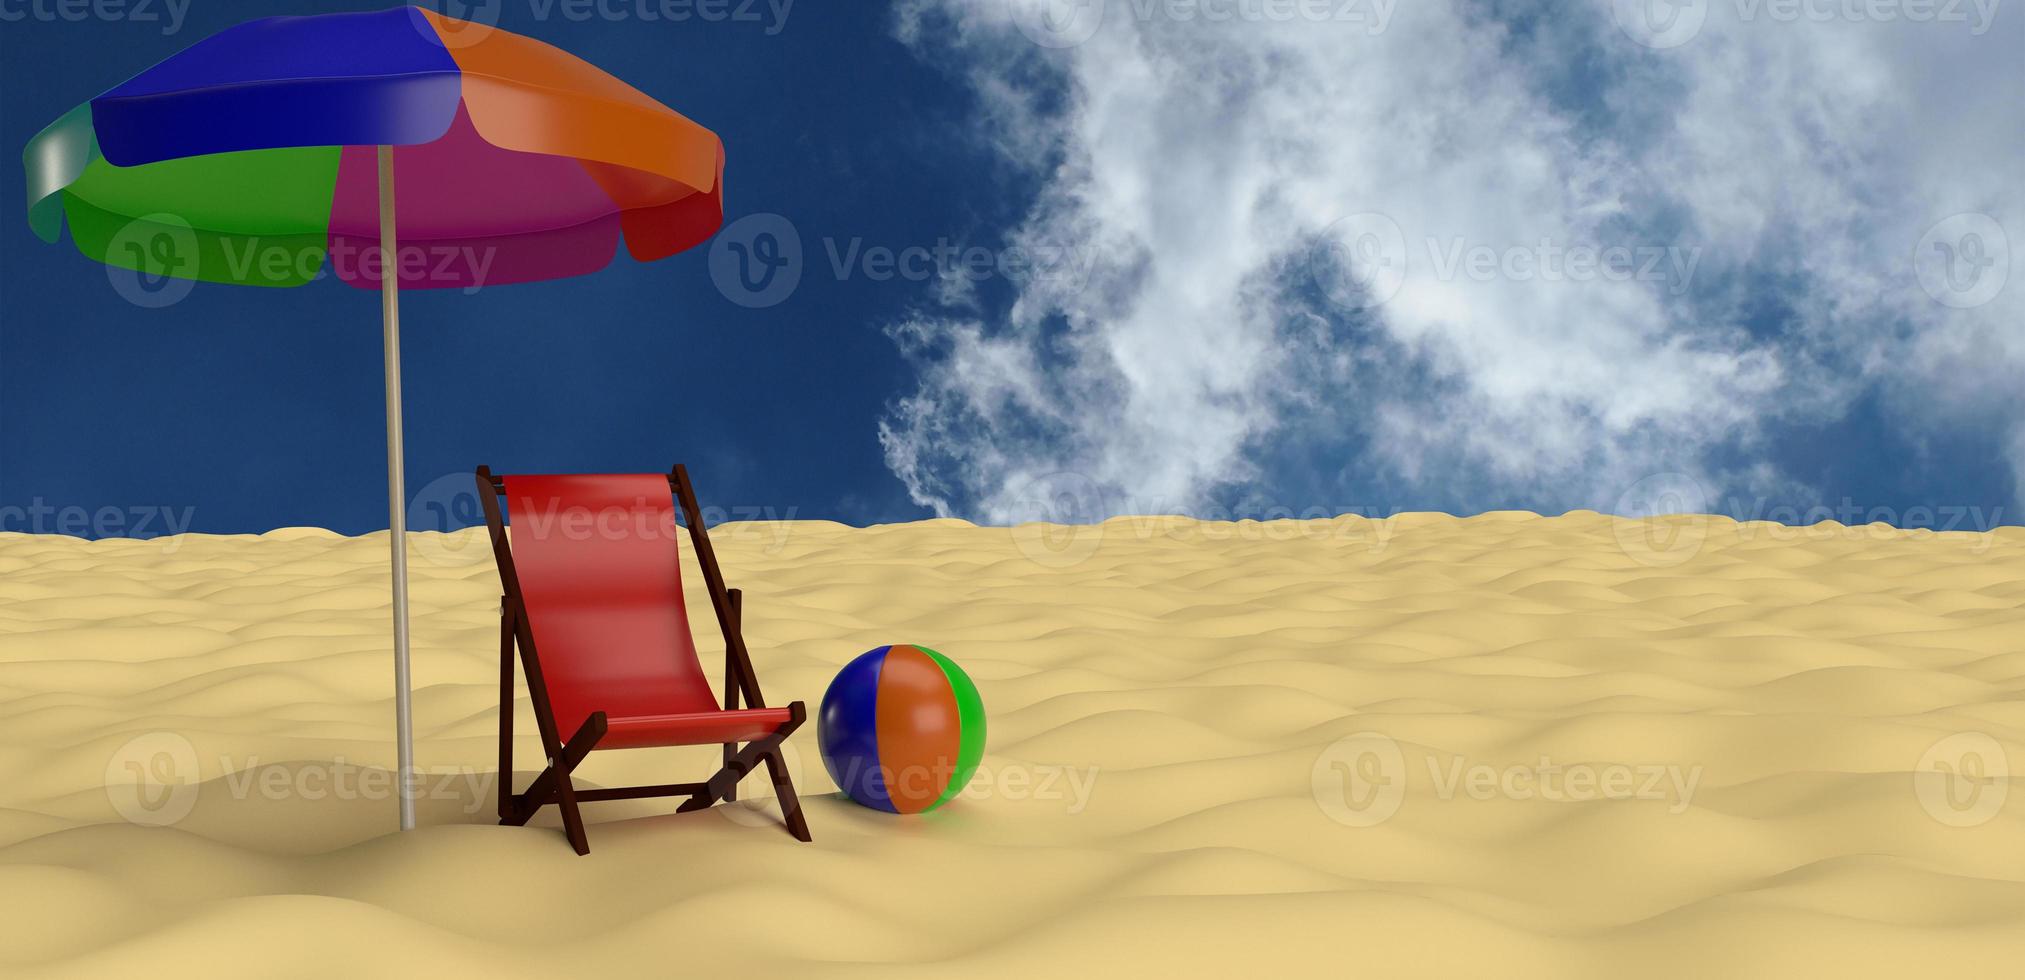 sedia a sdraio ombrellone palla colorato arcobaleno sulla spiaggia isola sabbia cielo blu nuvoloso viaggio viaggio turismo vista mare paradiso luce del sole felice vacanza relax vacanza romantico beautiful.3d rendering foto